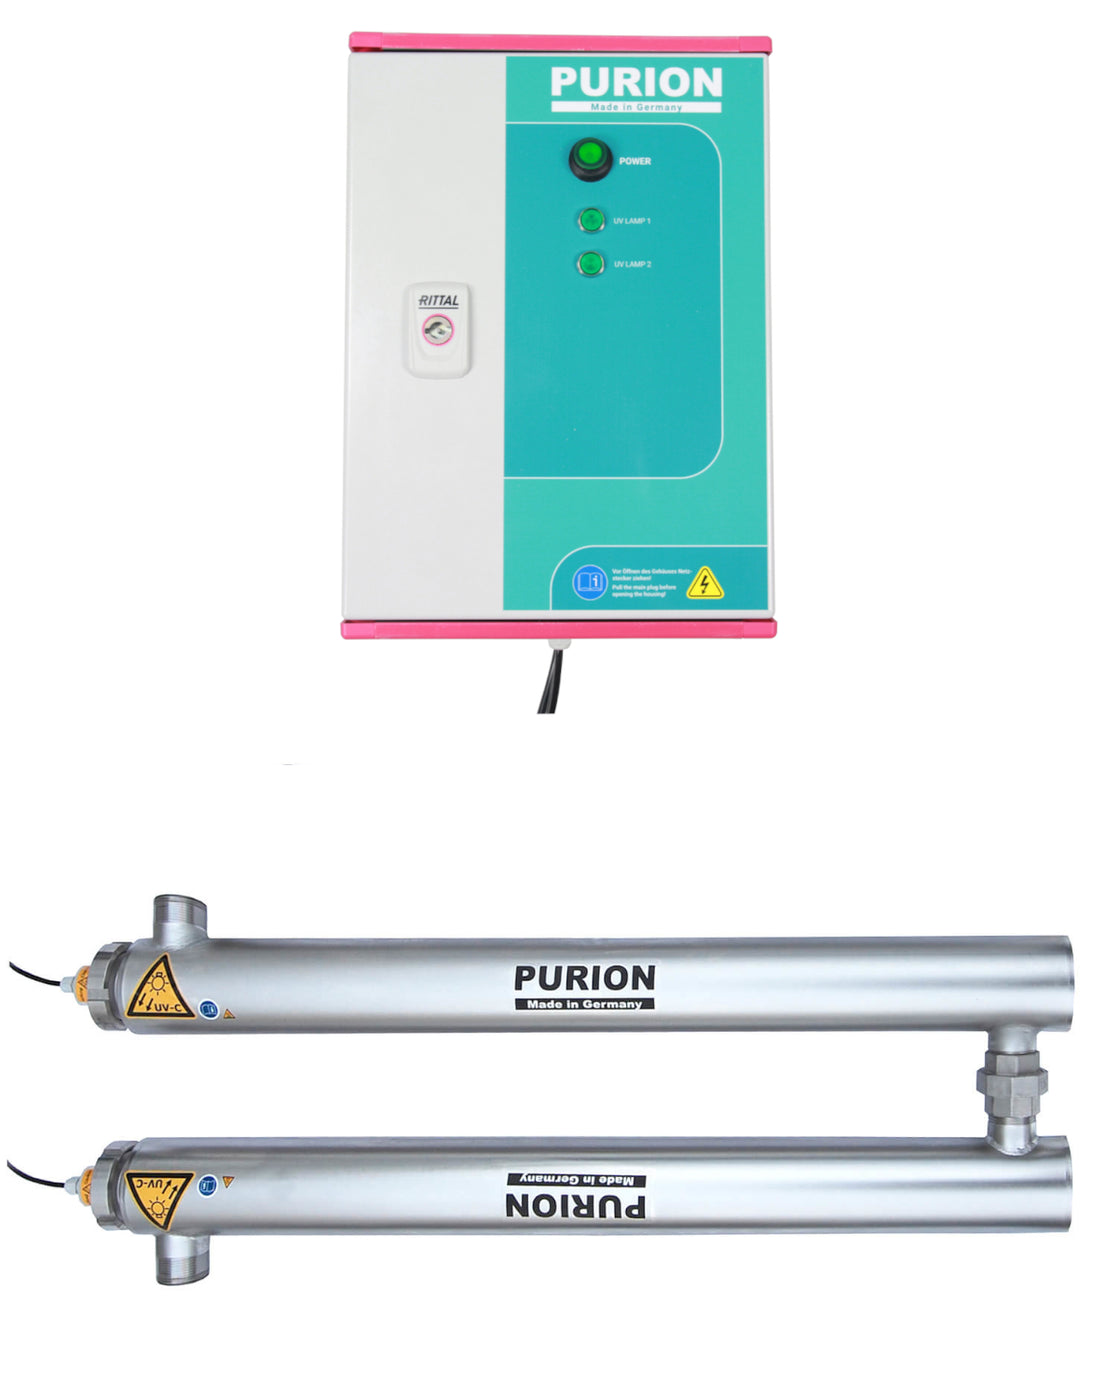 Das Purion 2501 Dual Basic Wasseraufbereitungssystem der PURION GmbH ist eine revolutionäre UV-C-Desinfektionslösung, die für klares und sauberes Wasser sorgt. Mit der fortschrittlichen Technologie von PURION 2501 Dual Basic ist es